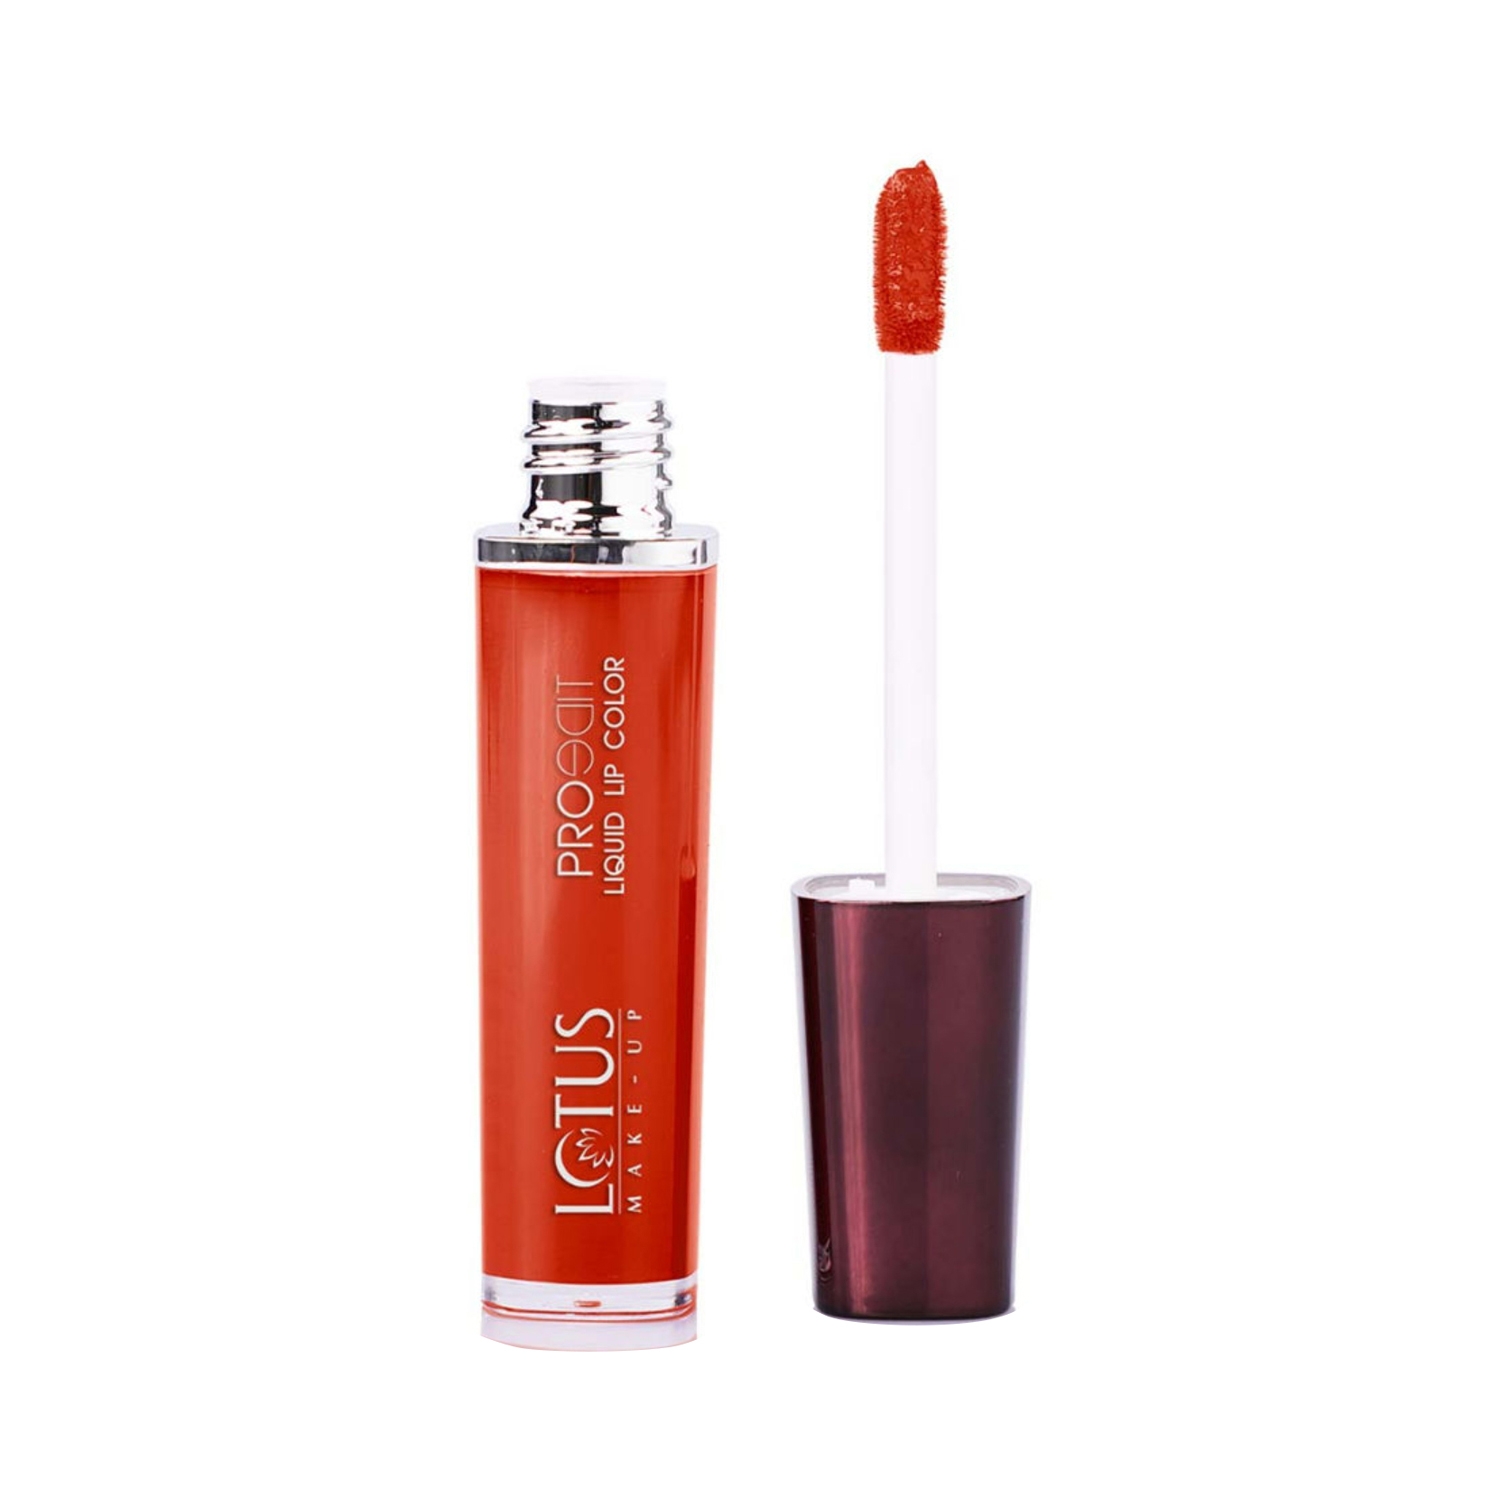 Lotus | Lotus Makeup Proedit Liquid Matte Lip Color - PLC09 Peachy Babe (8g)